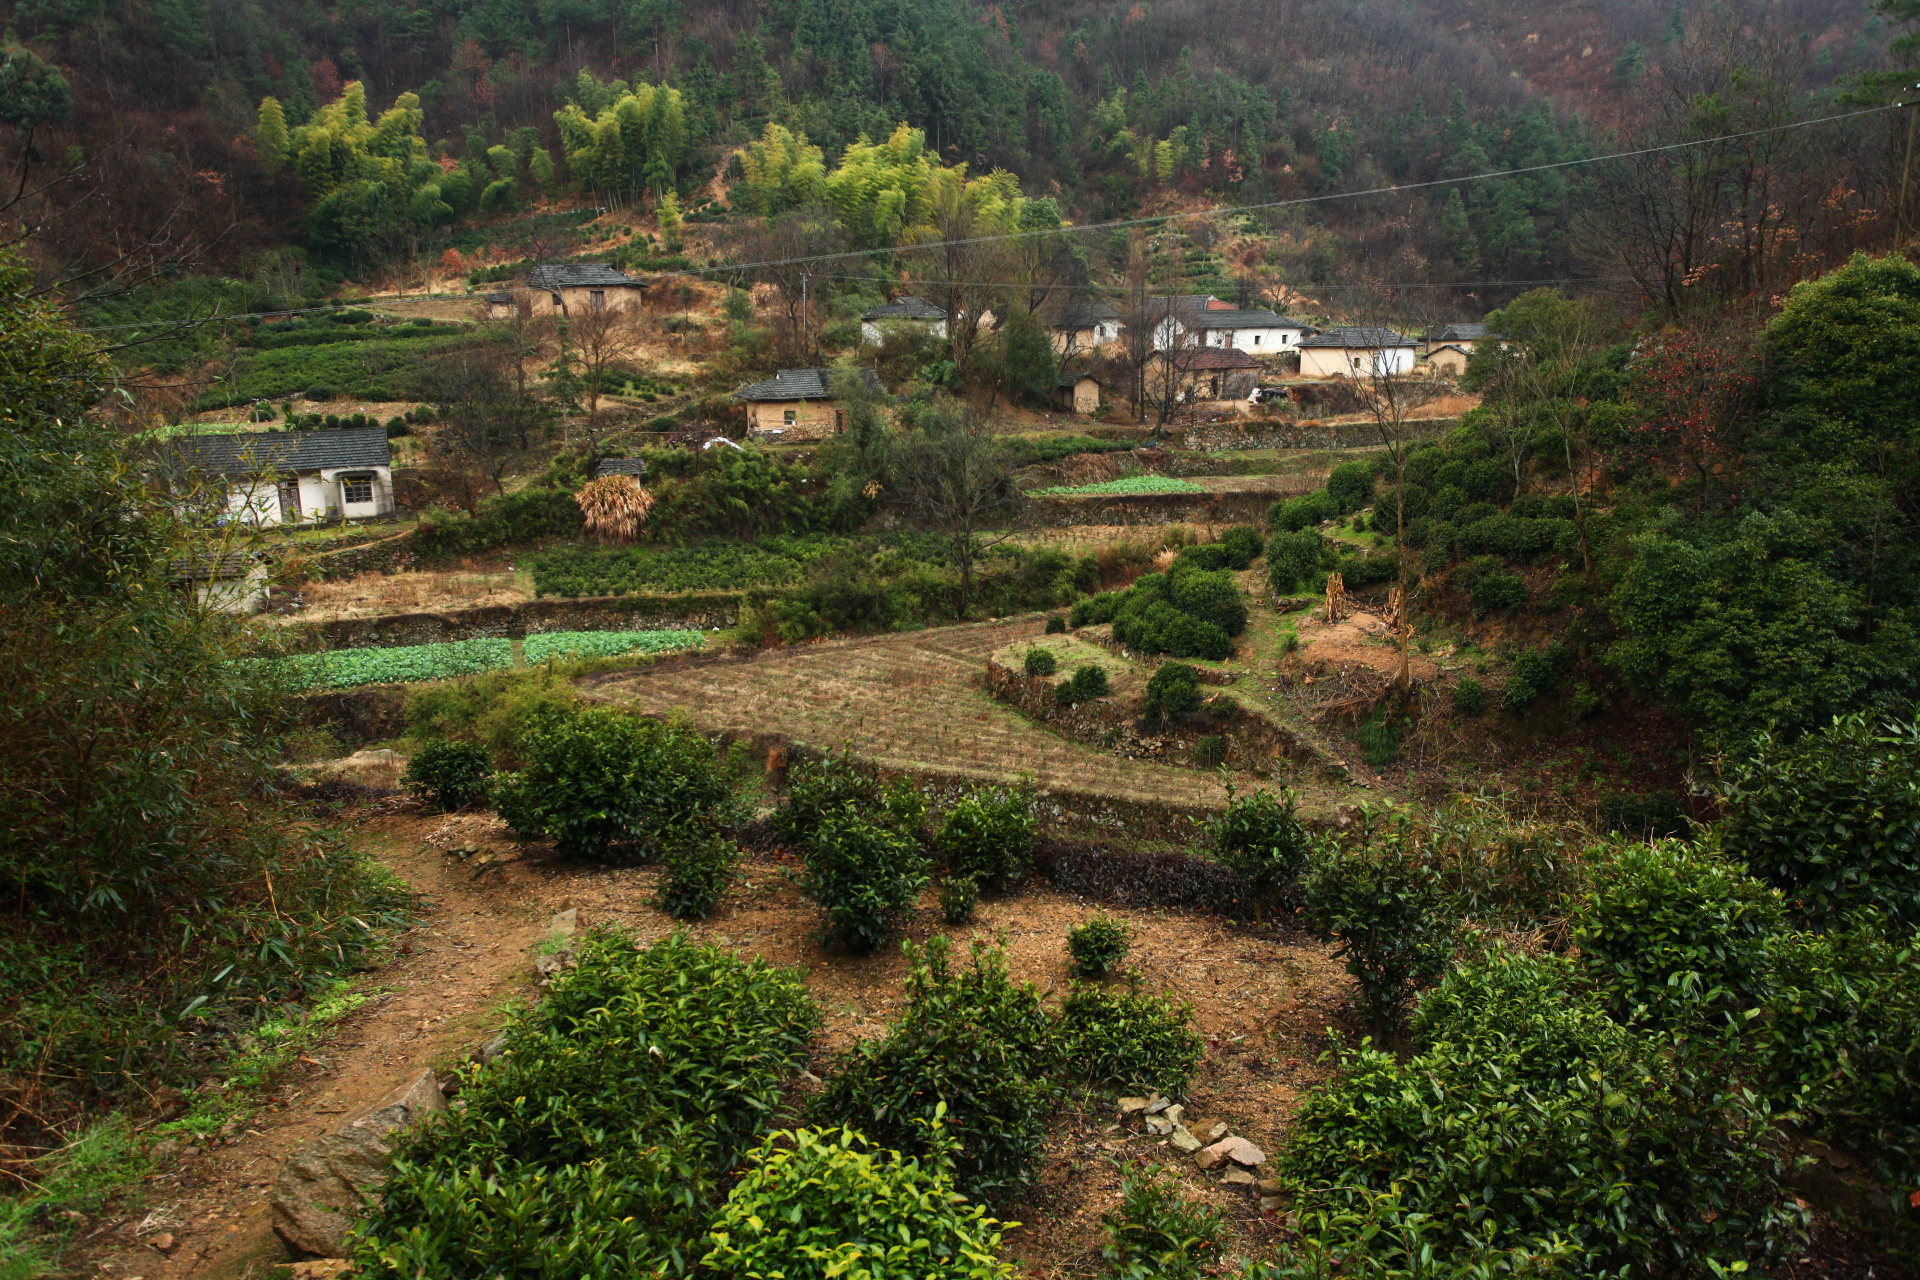 桐城小花,生长于安徽省桐城市大别山山脉,龙眠山里的一种绿茶,喝的是